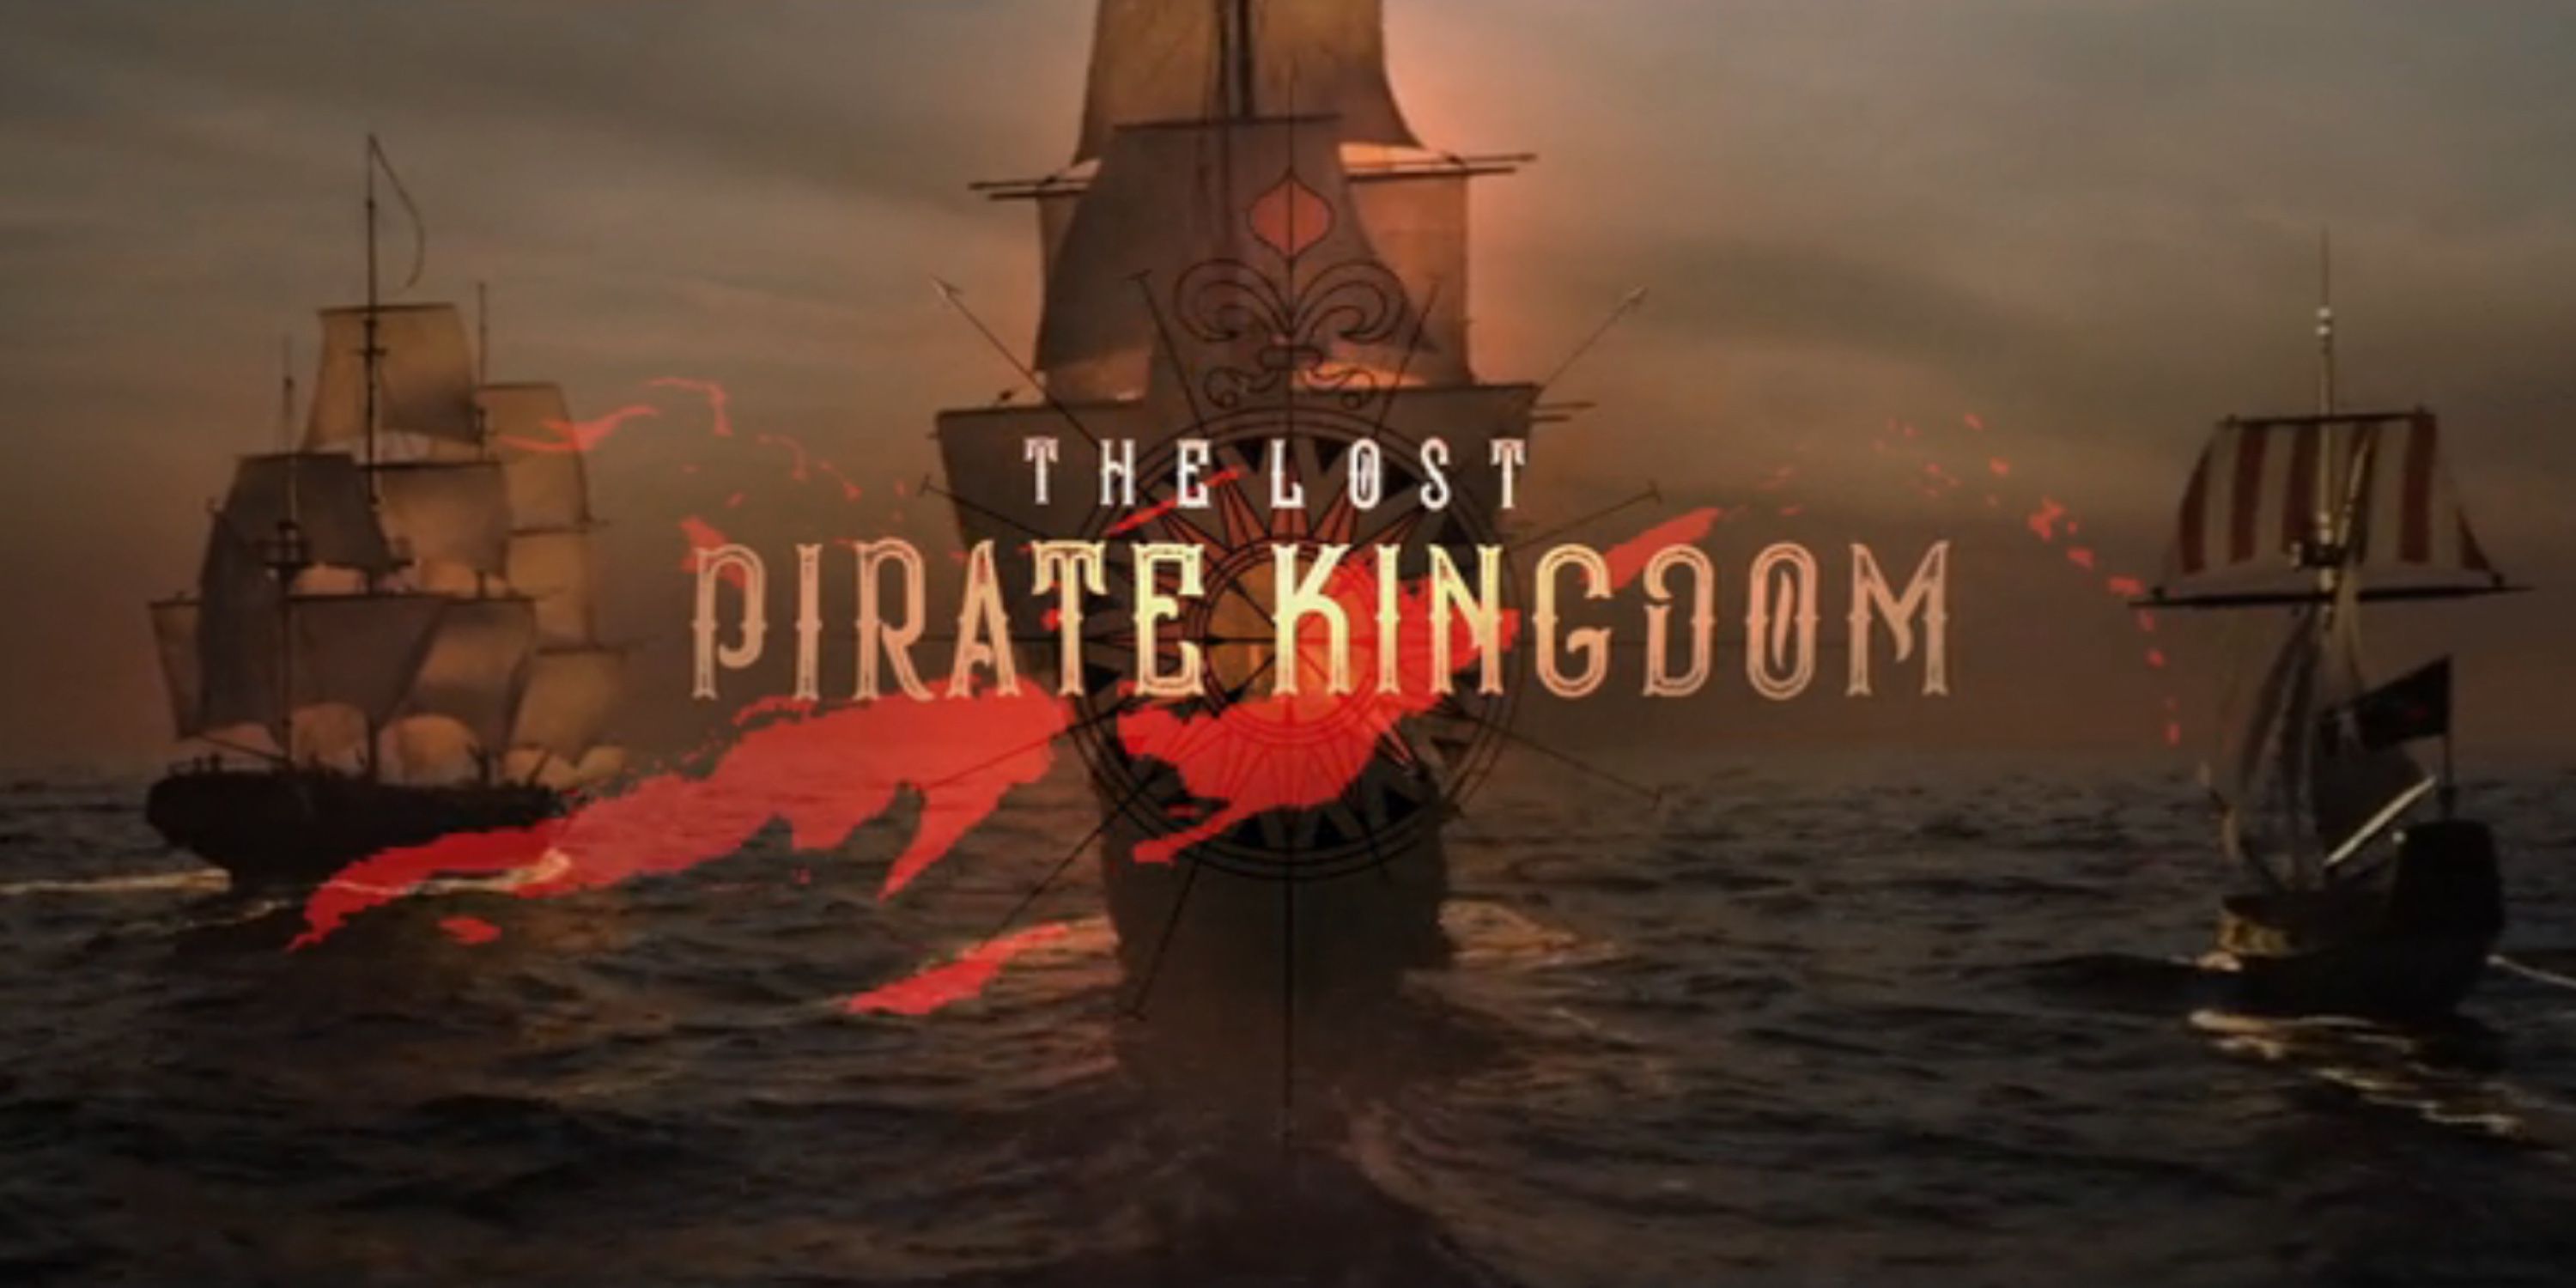 The Lost Pirate Kingdom on Netflix